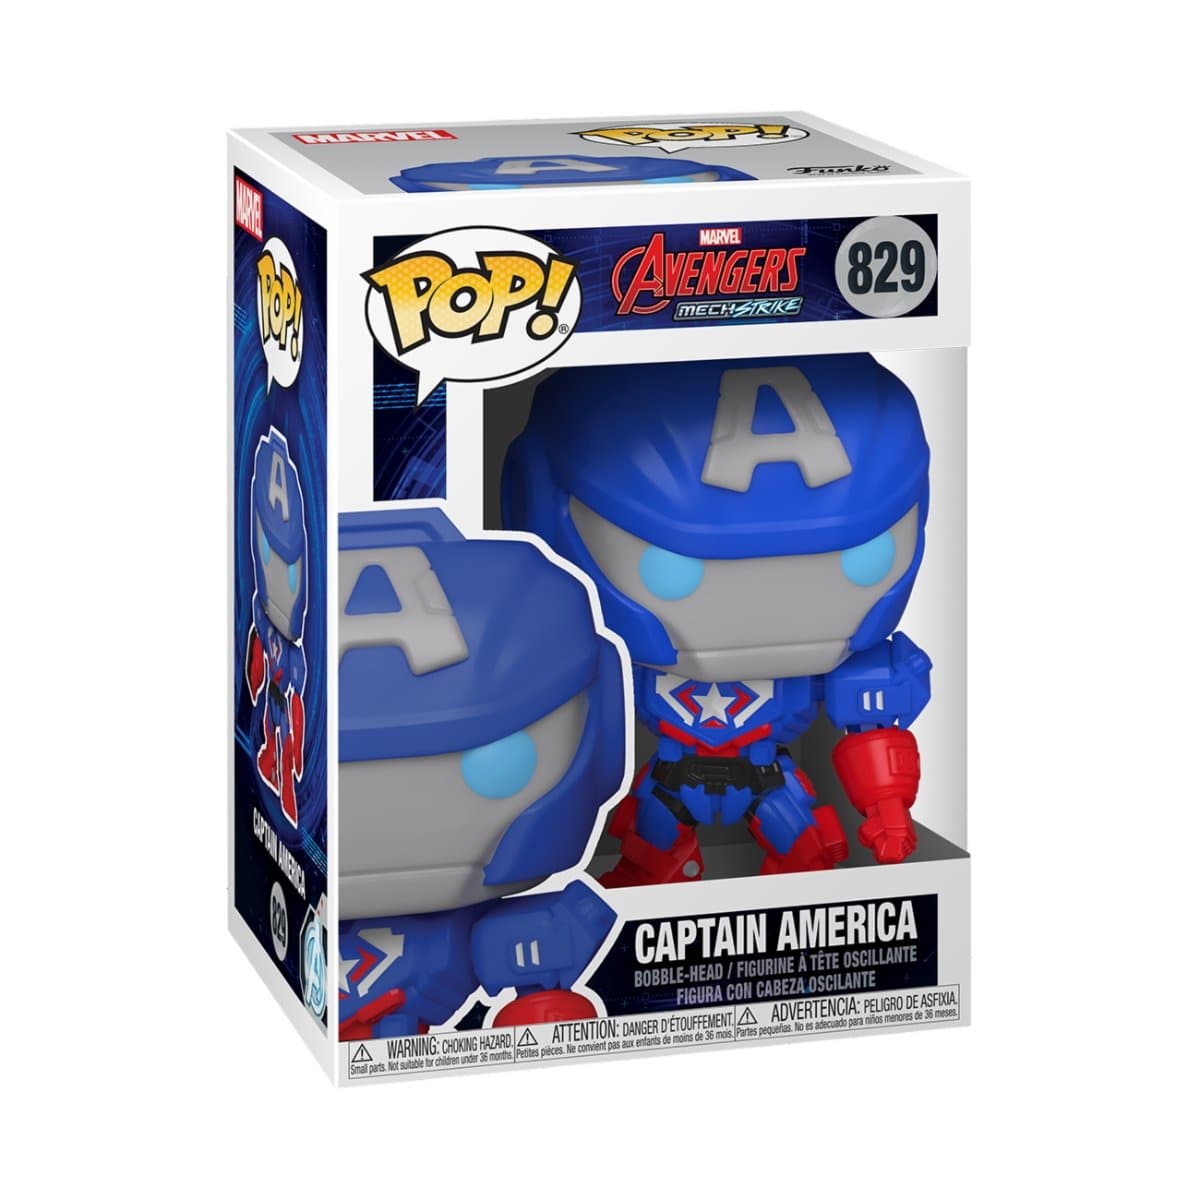 Funko Pop! Marvel Captain America The Winter Soldier Captain America  Bobble-Head Figure #41 - US